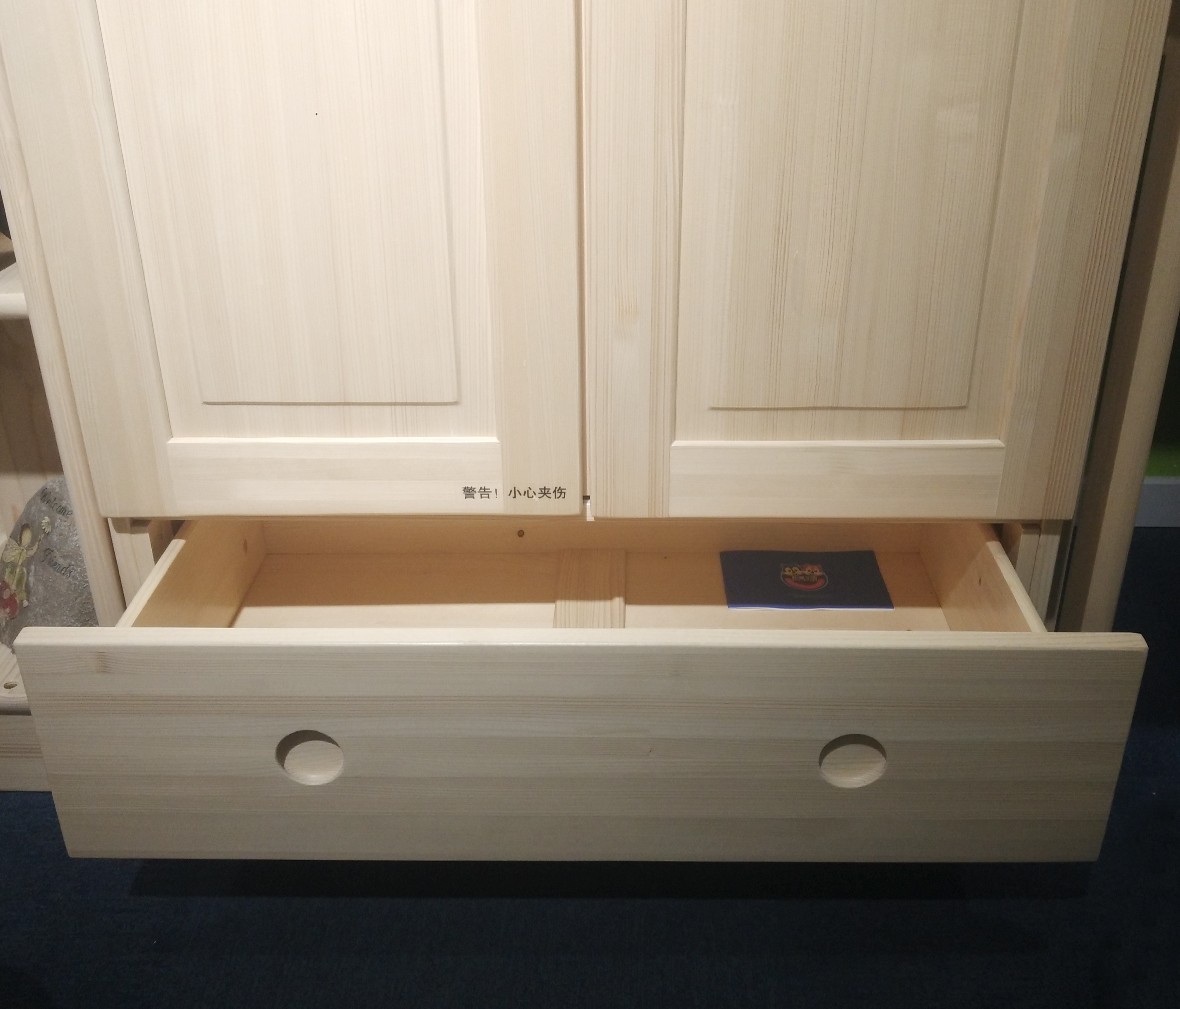 松堡王国 SP-A-G002型号两门衣柜加中隔板 进口芬兰木材质衣柜